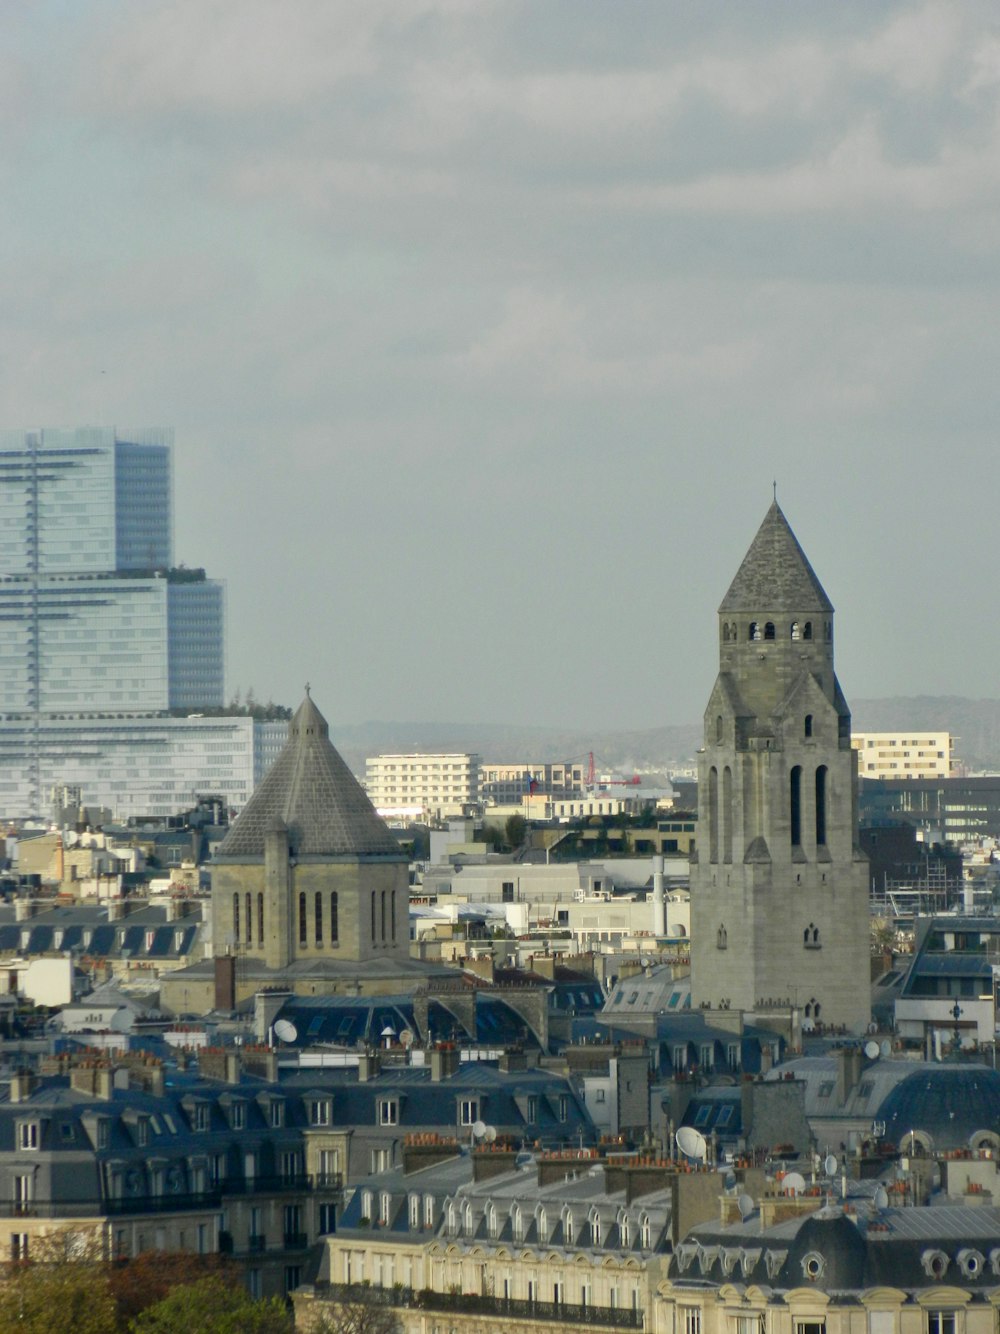 Blick auf eine Stadt mit hohen Gebäuden und einem Glockenturm